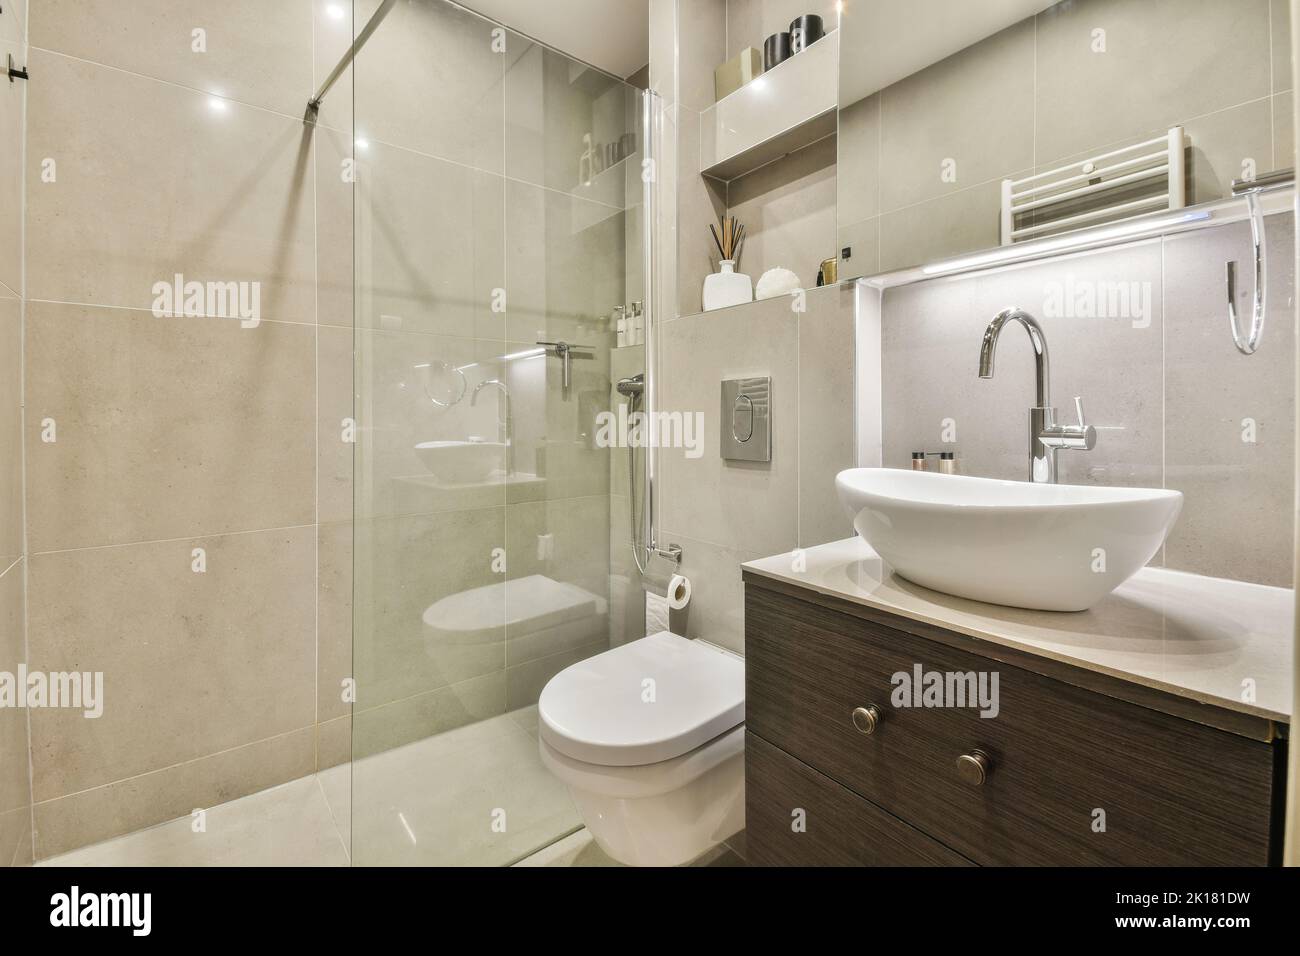 Cloison en verre entre le robinet de douche et les toilettes murales dans les toilettes modernes de la maison Banque D'Images